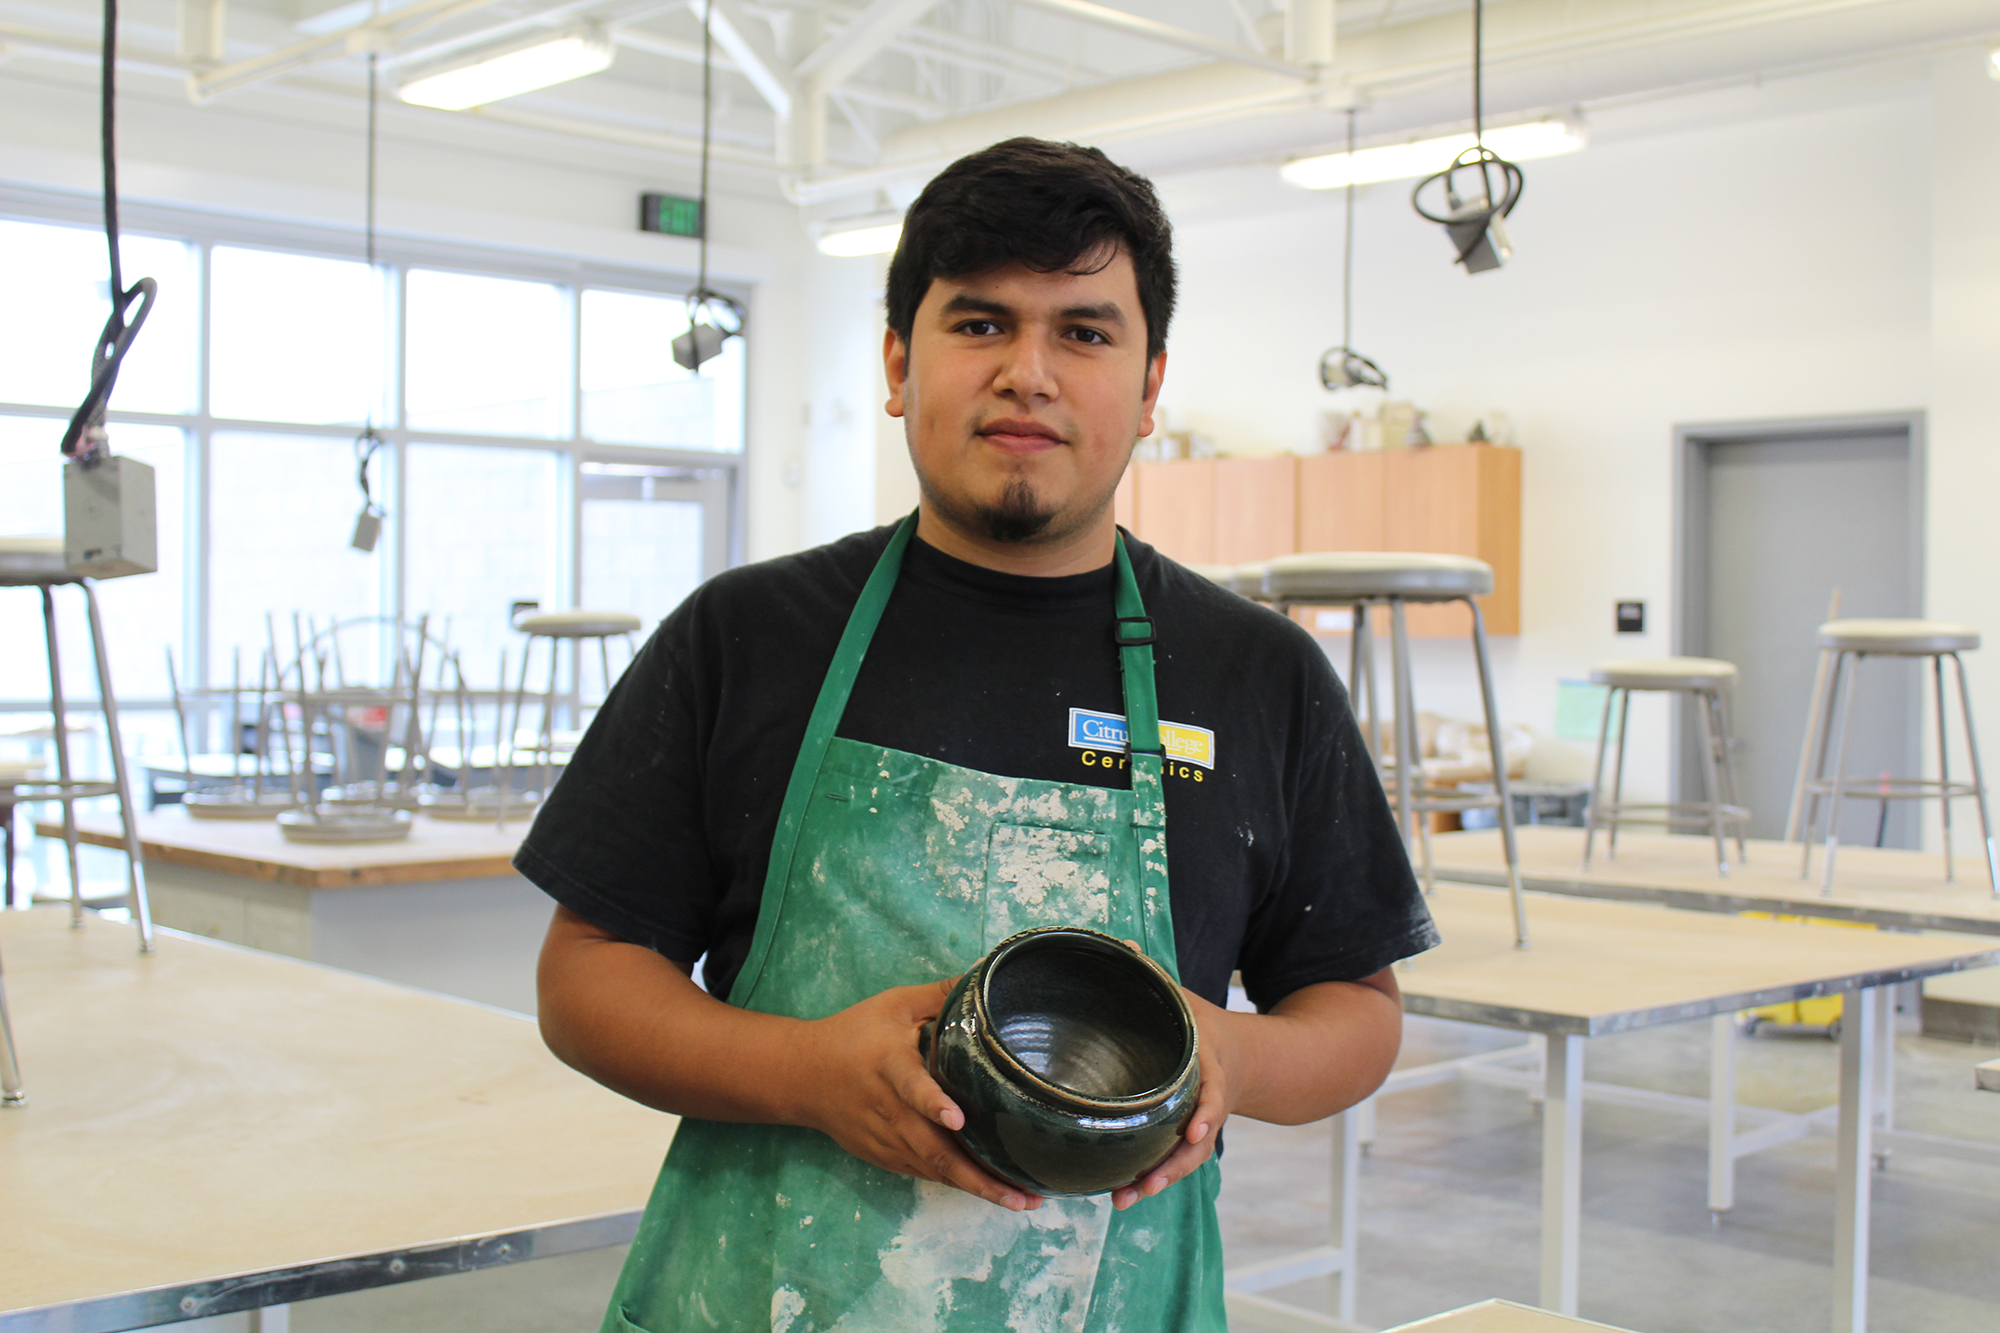 Student Spotlight: Artist follows call for ceramics